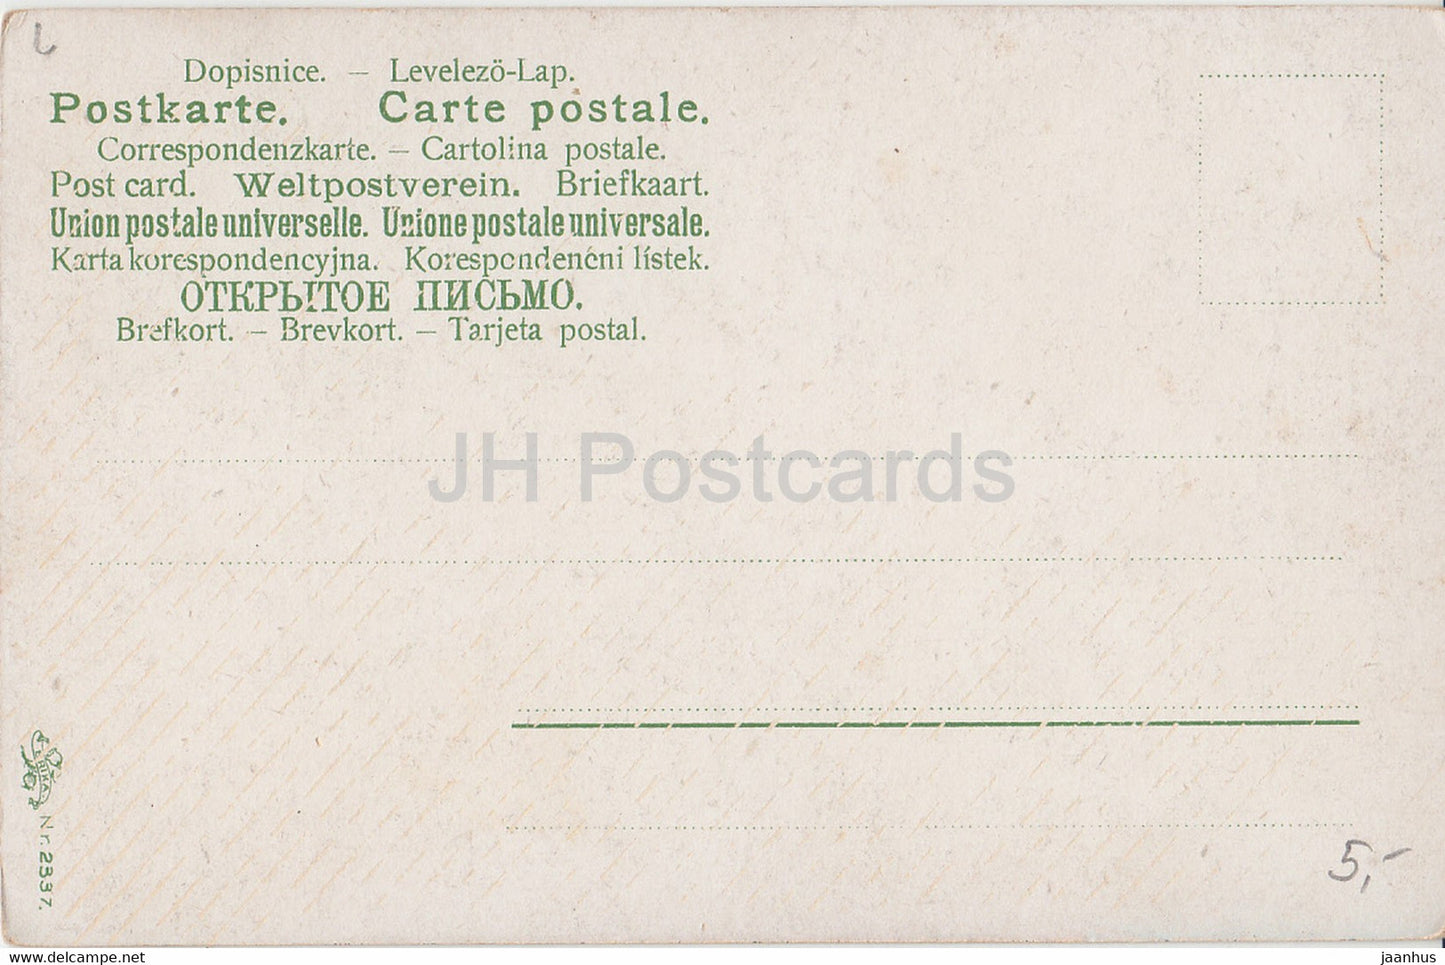 Arbeiterin auf dem Feld - Erika Nr 2337 - alte Postkarte - Deutschland - unbenutzt